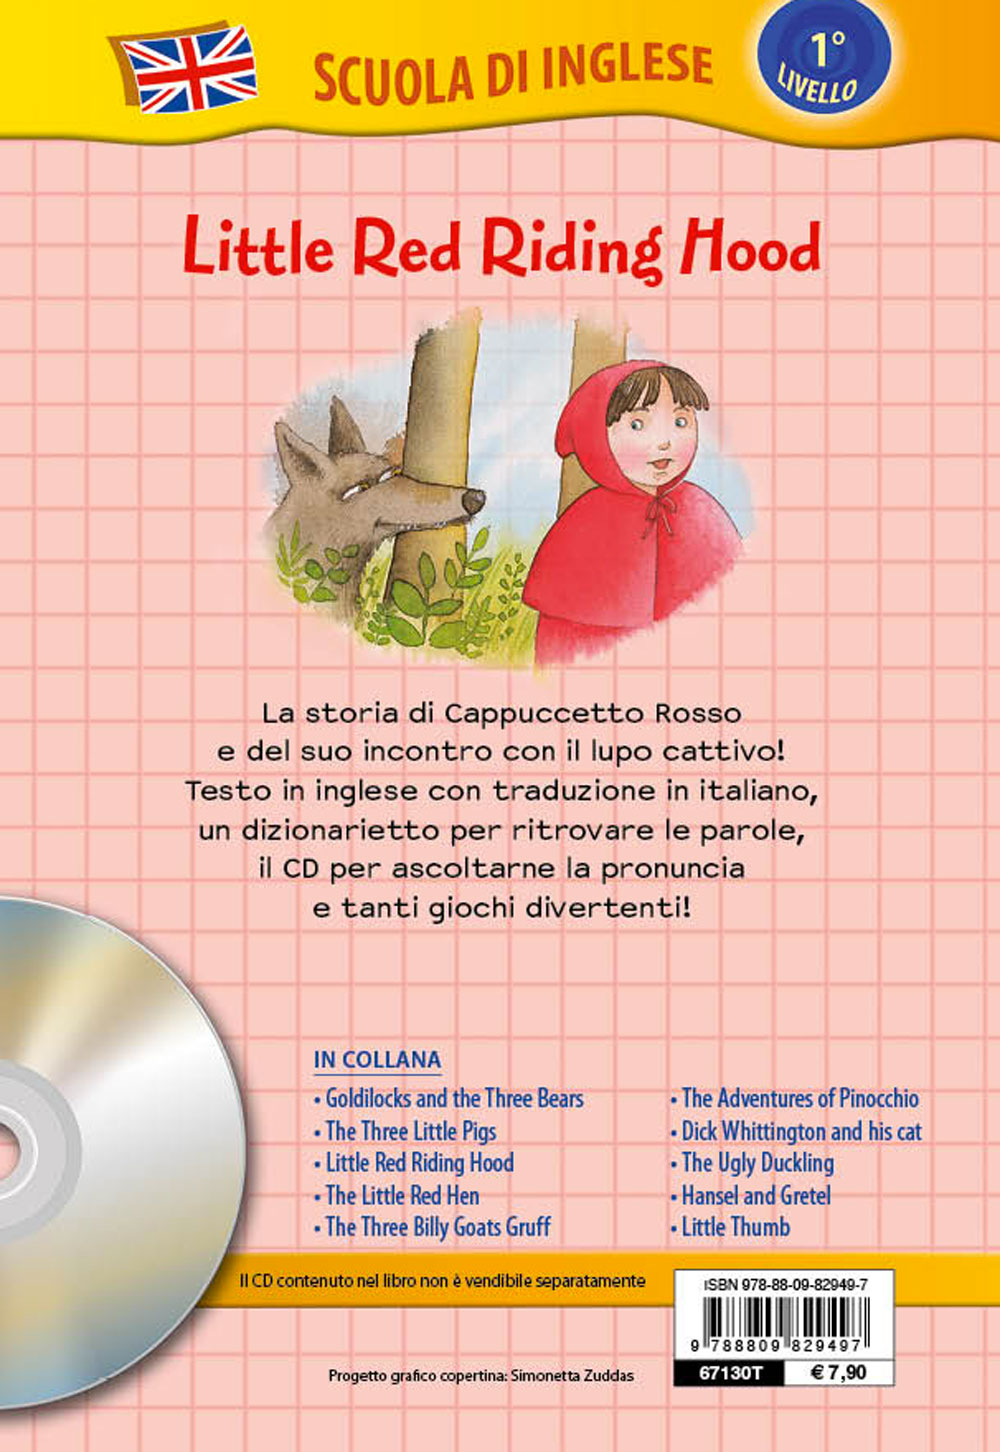 Little Red Riding Hood + CD::Cappuccetto Rosso - Con traduzione e dizionario!